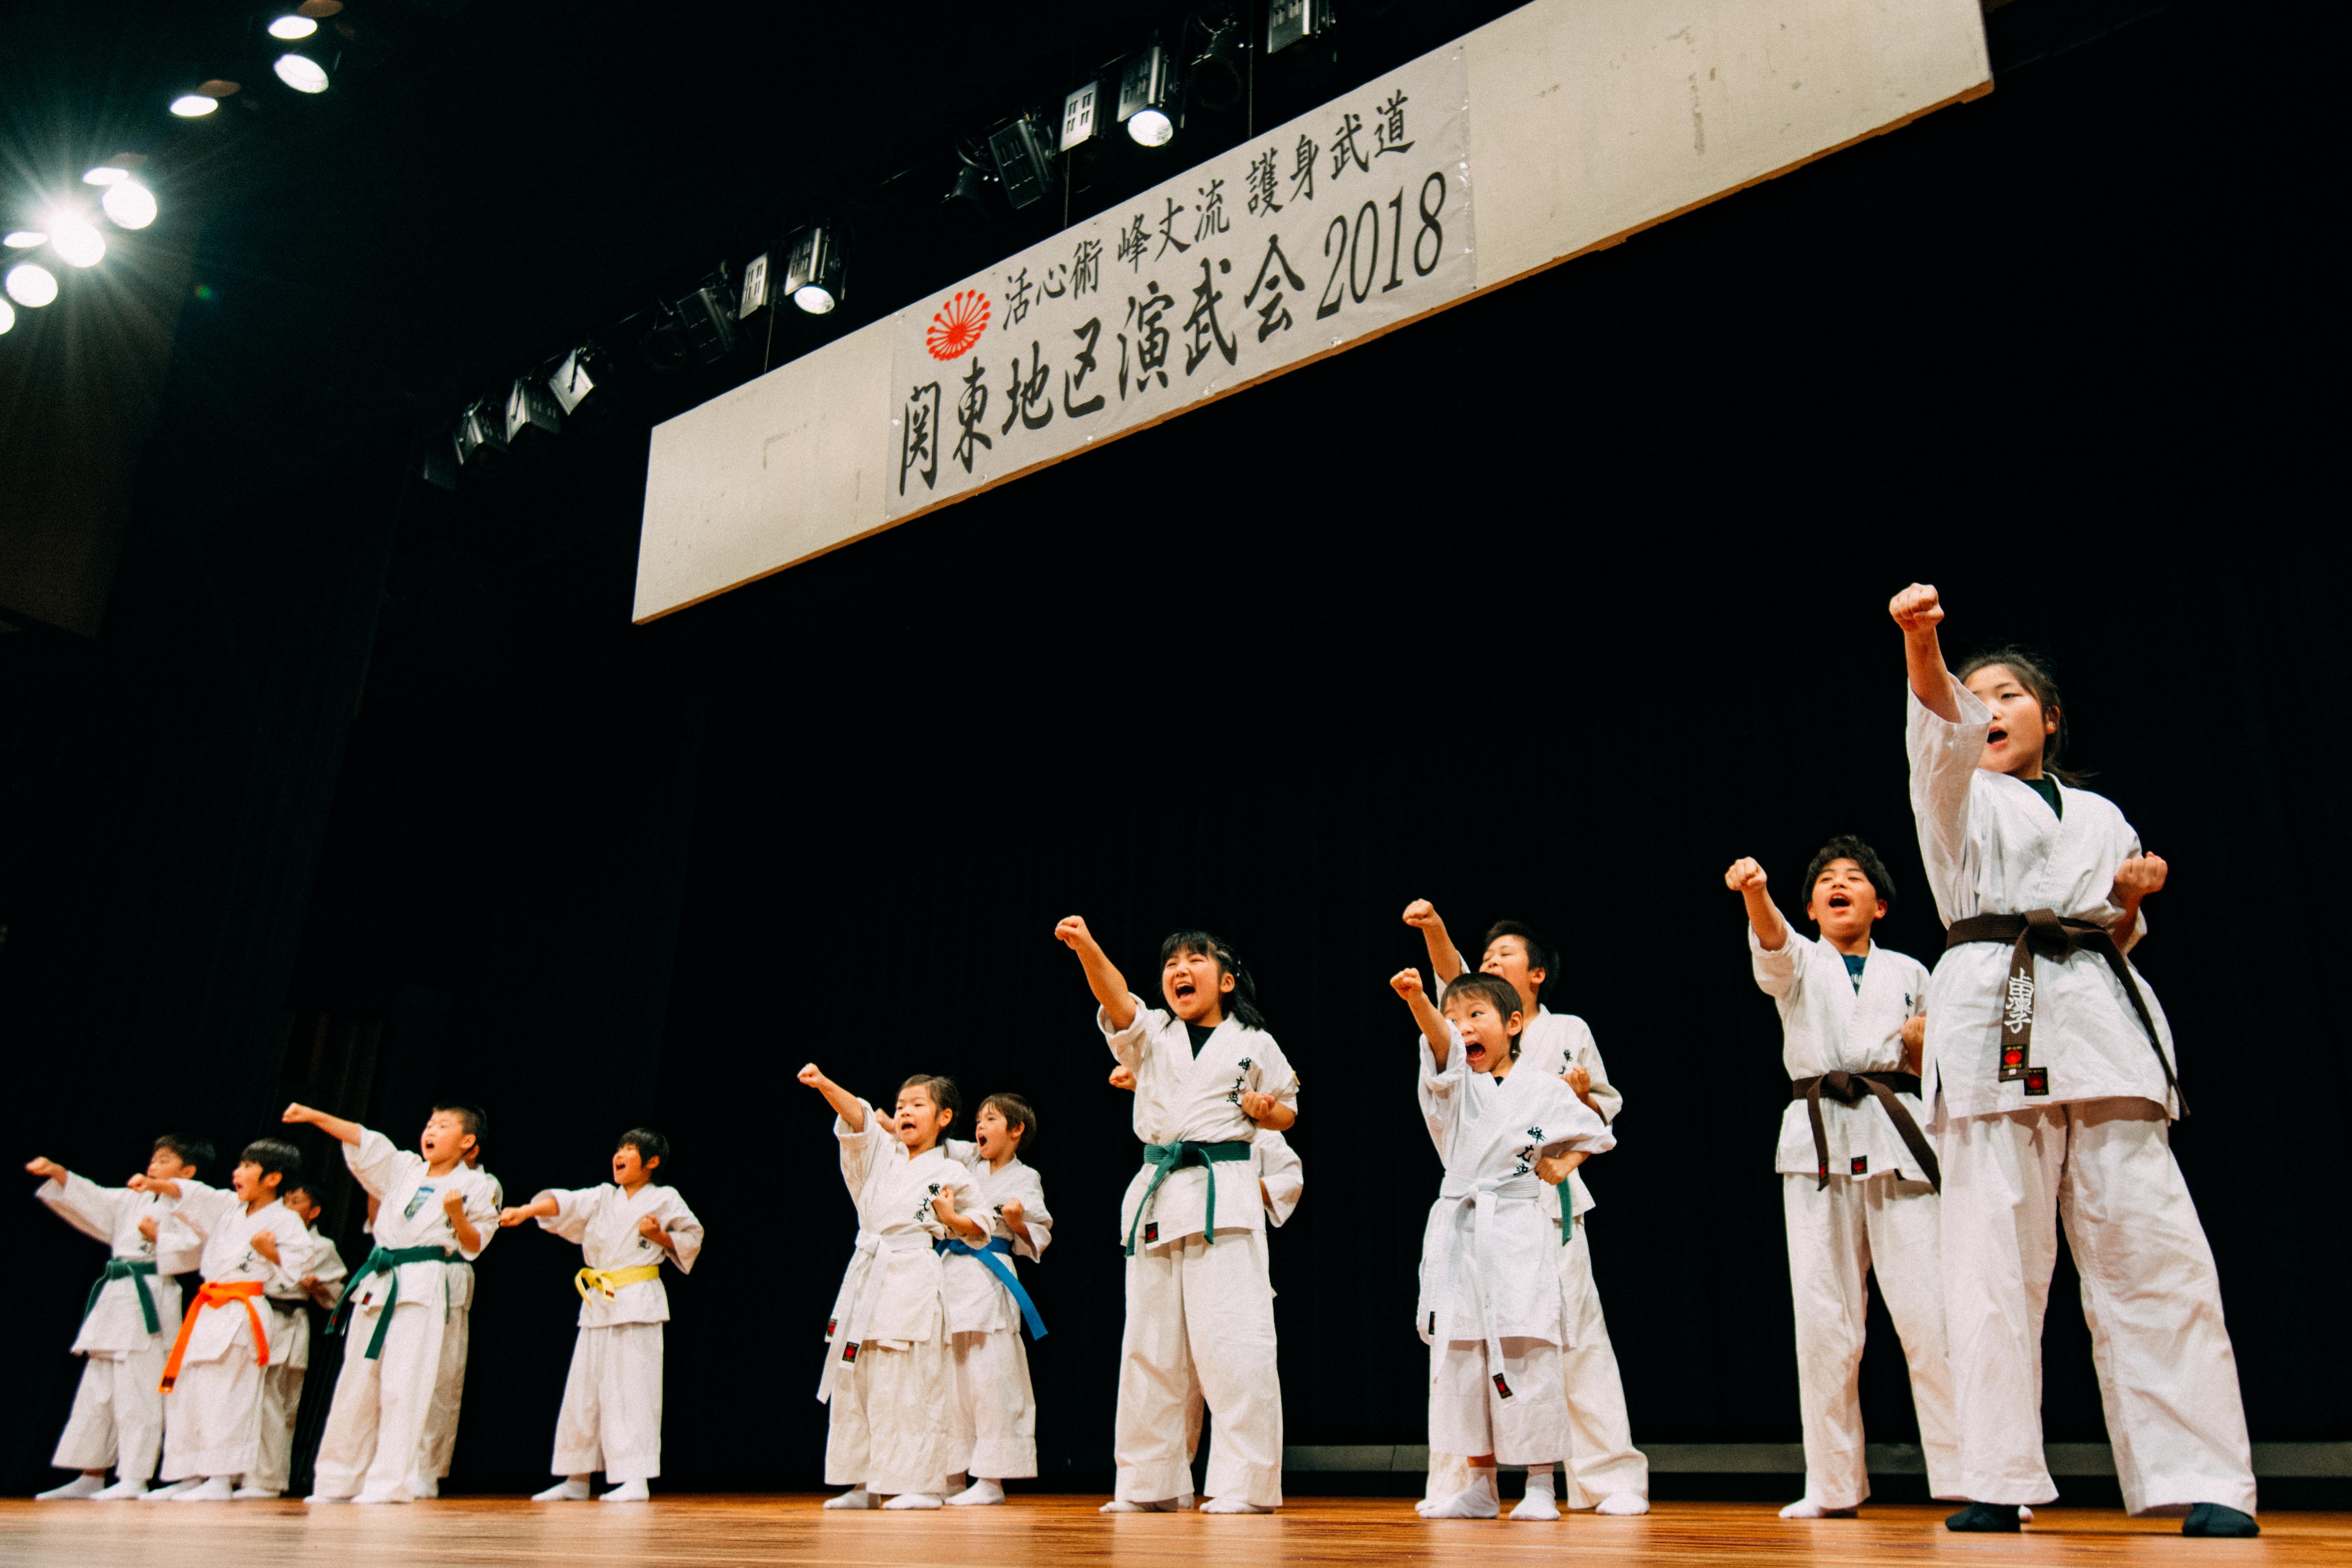 峰丈流「関東地区 演武会 2018」福祉会館教室の写真